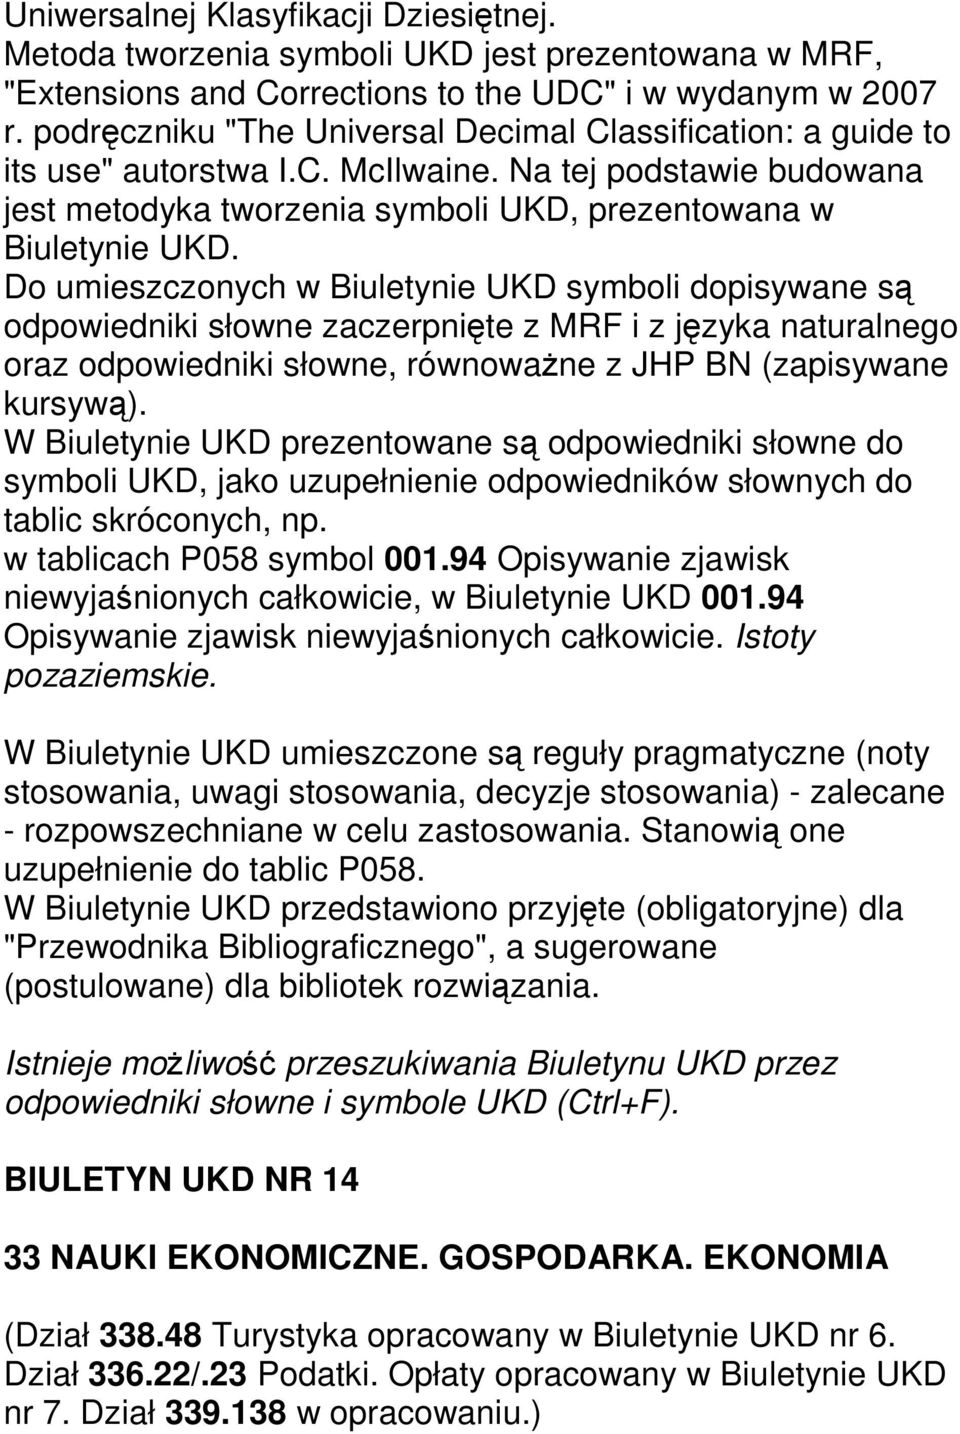 Do umieszczonych w Biuletynie UKD symboli dopisywane są odpowiedniki słowne zaczerpnięte z MRF i z języka naturalnego oraz odpowiedniki słowne, równoważne z JHP BN (zapisywane kursywą).